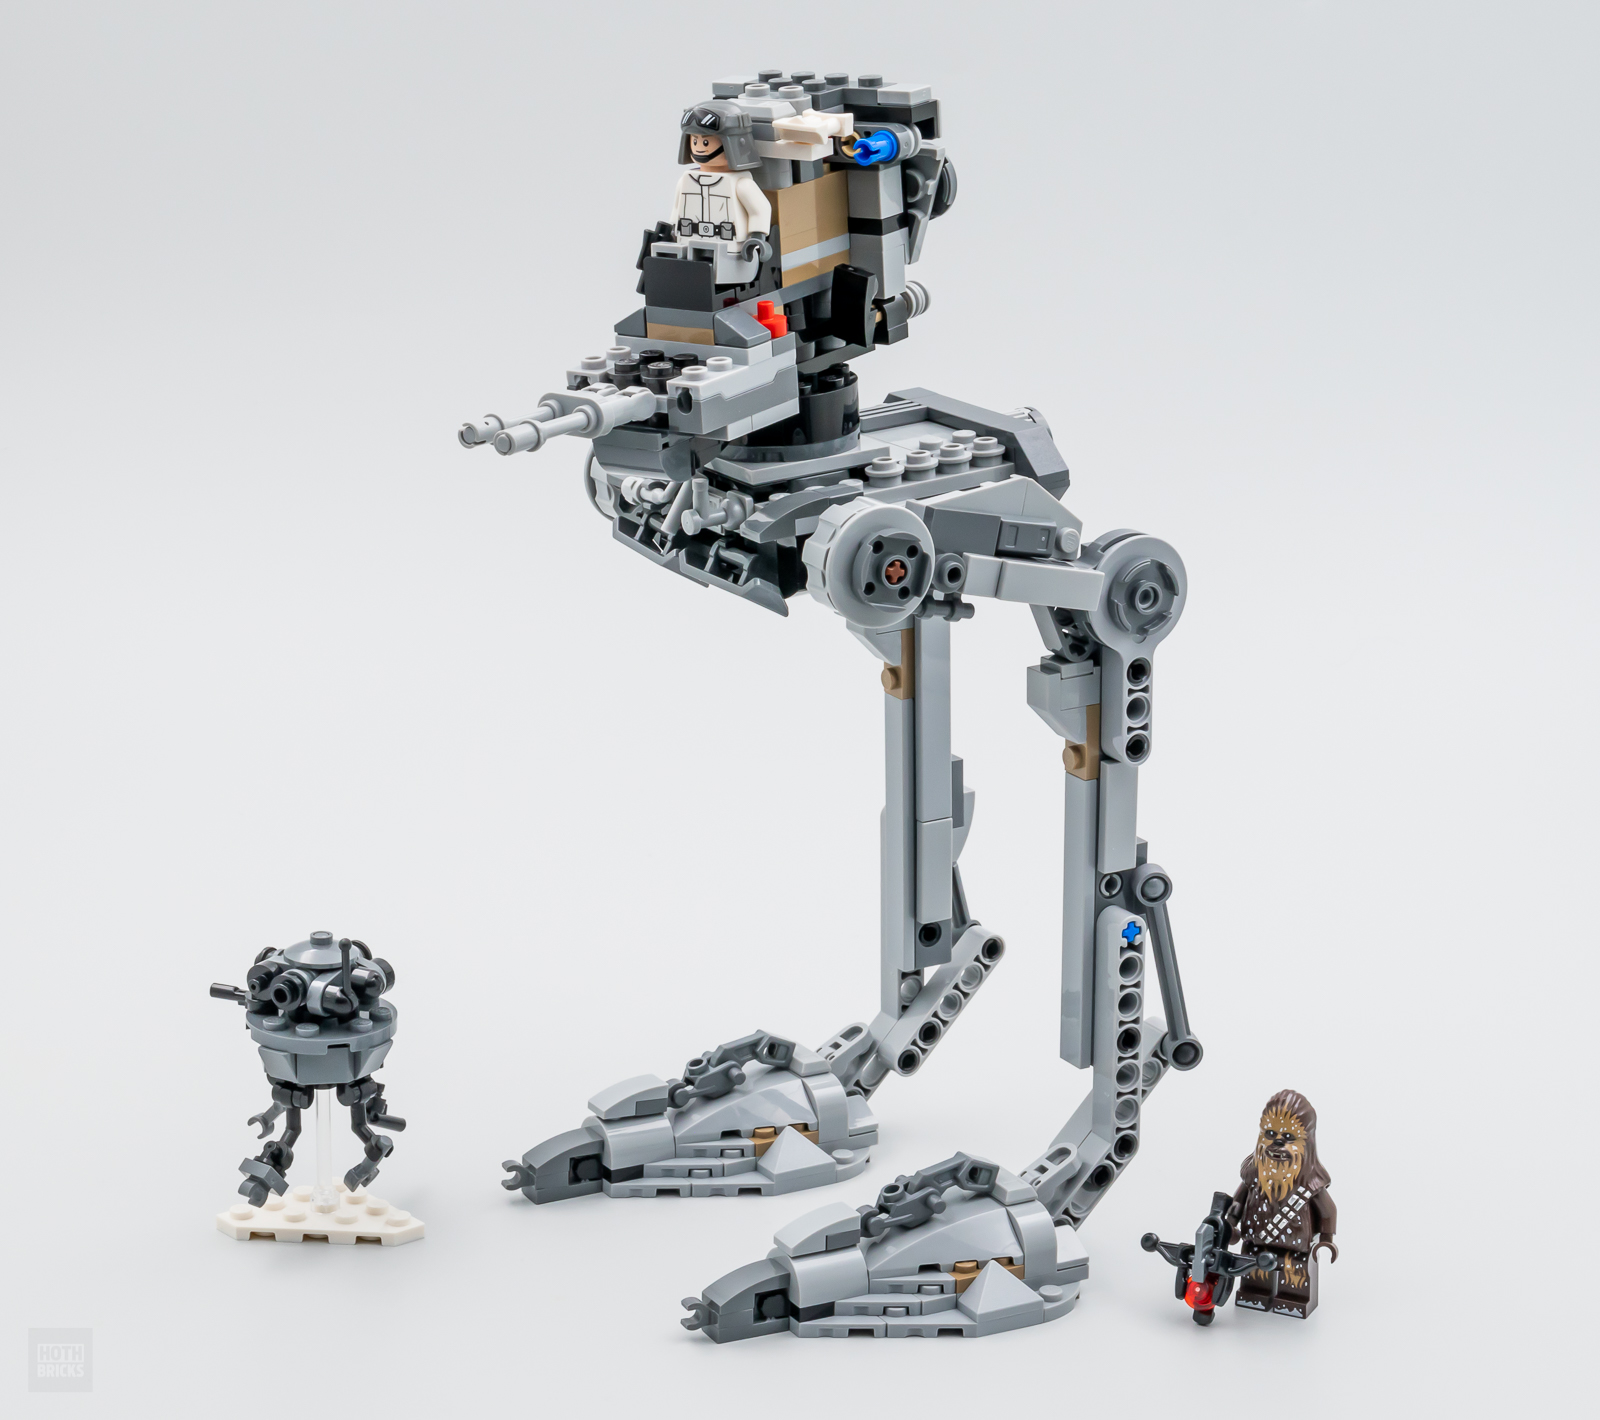 ▻ Review: LEGO Star Wars 75322 Hoth AT-ST - HOTH BRICKS